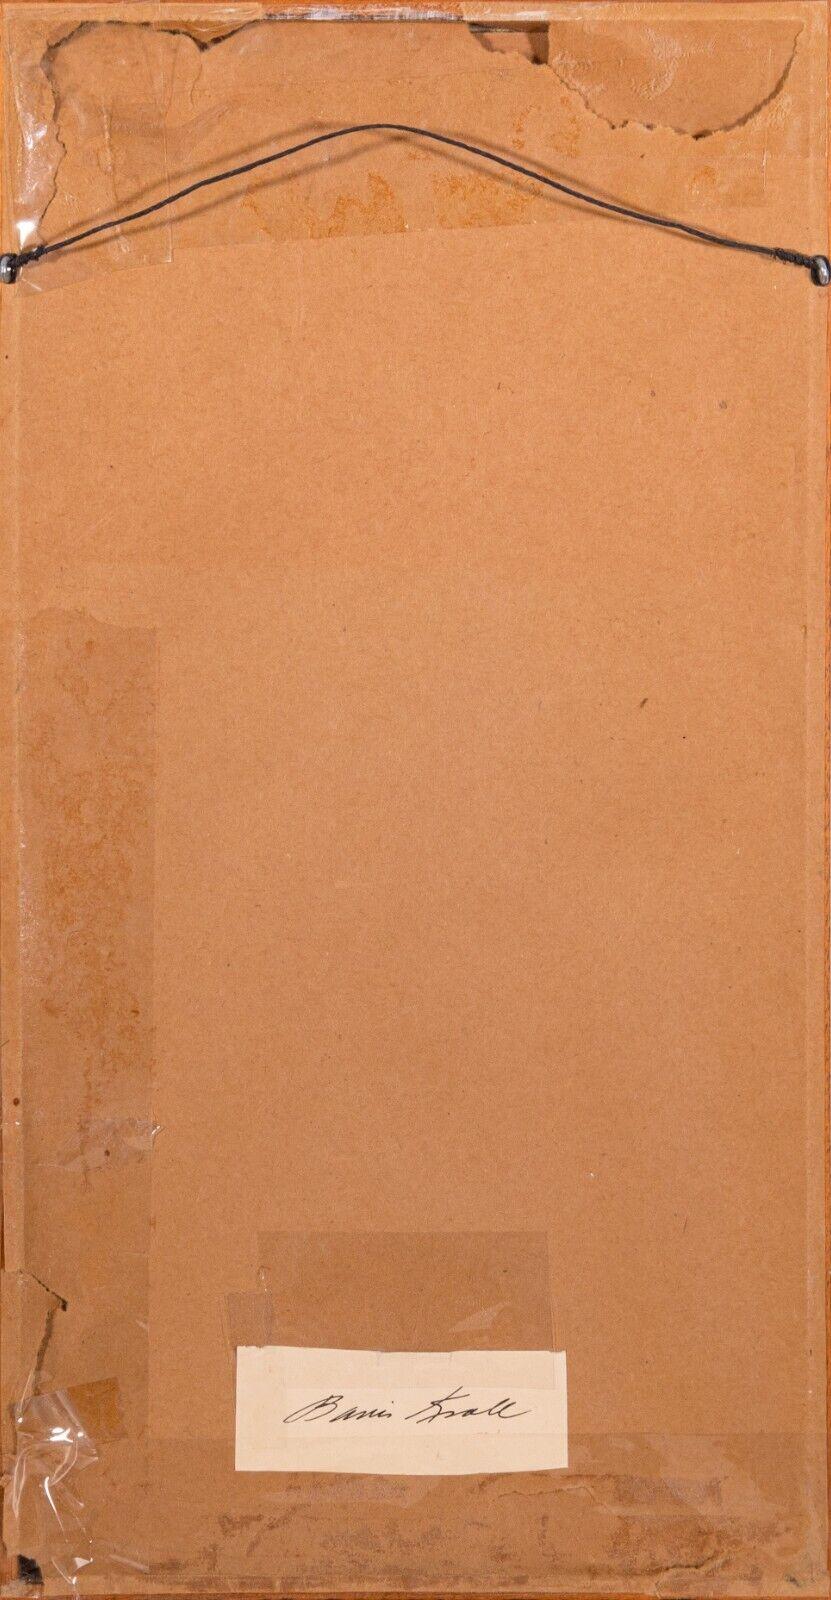 Boris Kroll Mid-Century Modern Woven Fabric Monogram Bk Signed Verso Framed 1965 For Sale 3